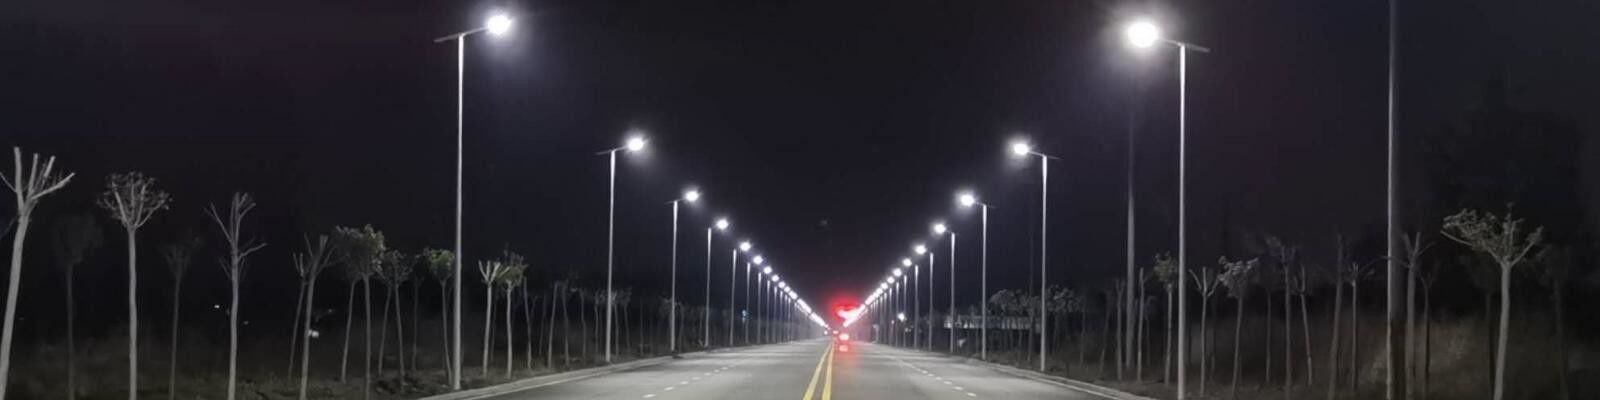 Iluminazioni pubbliche all'aperto del LED